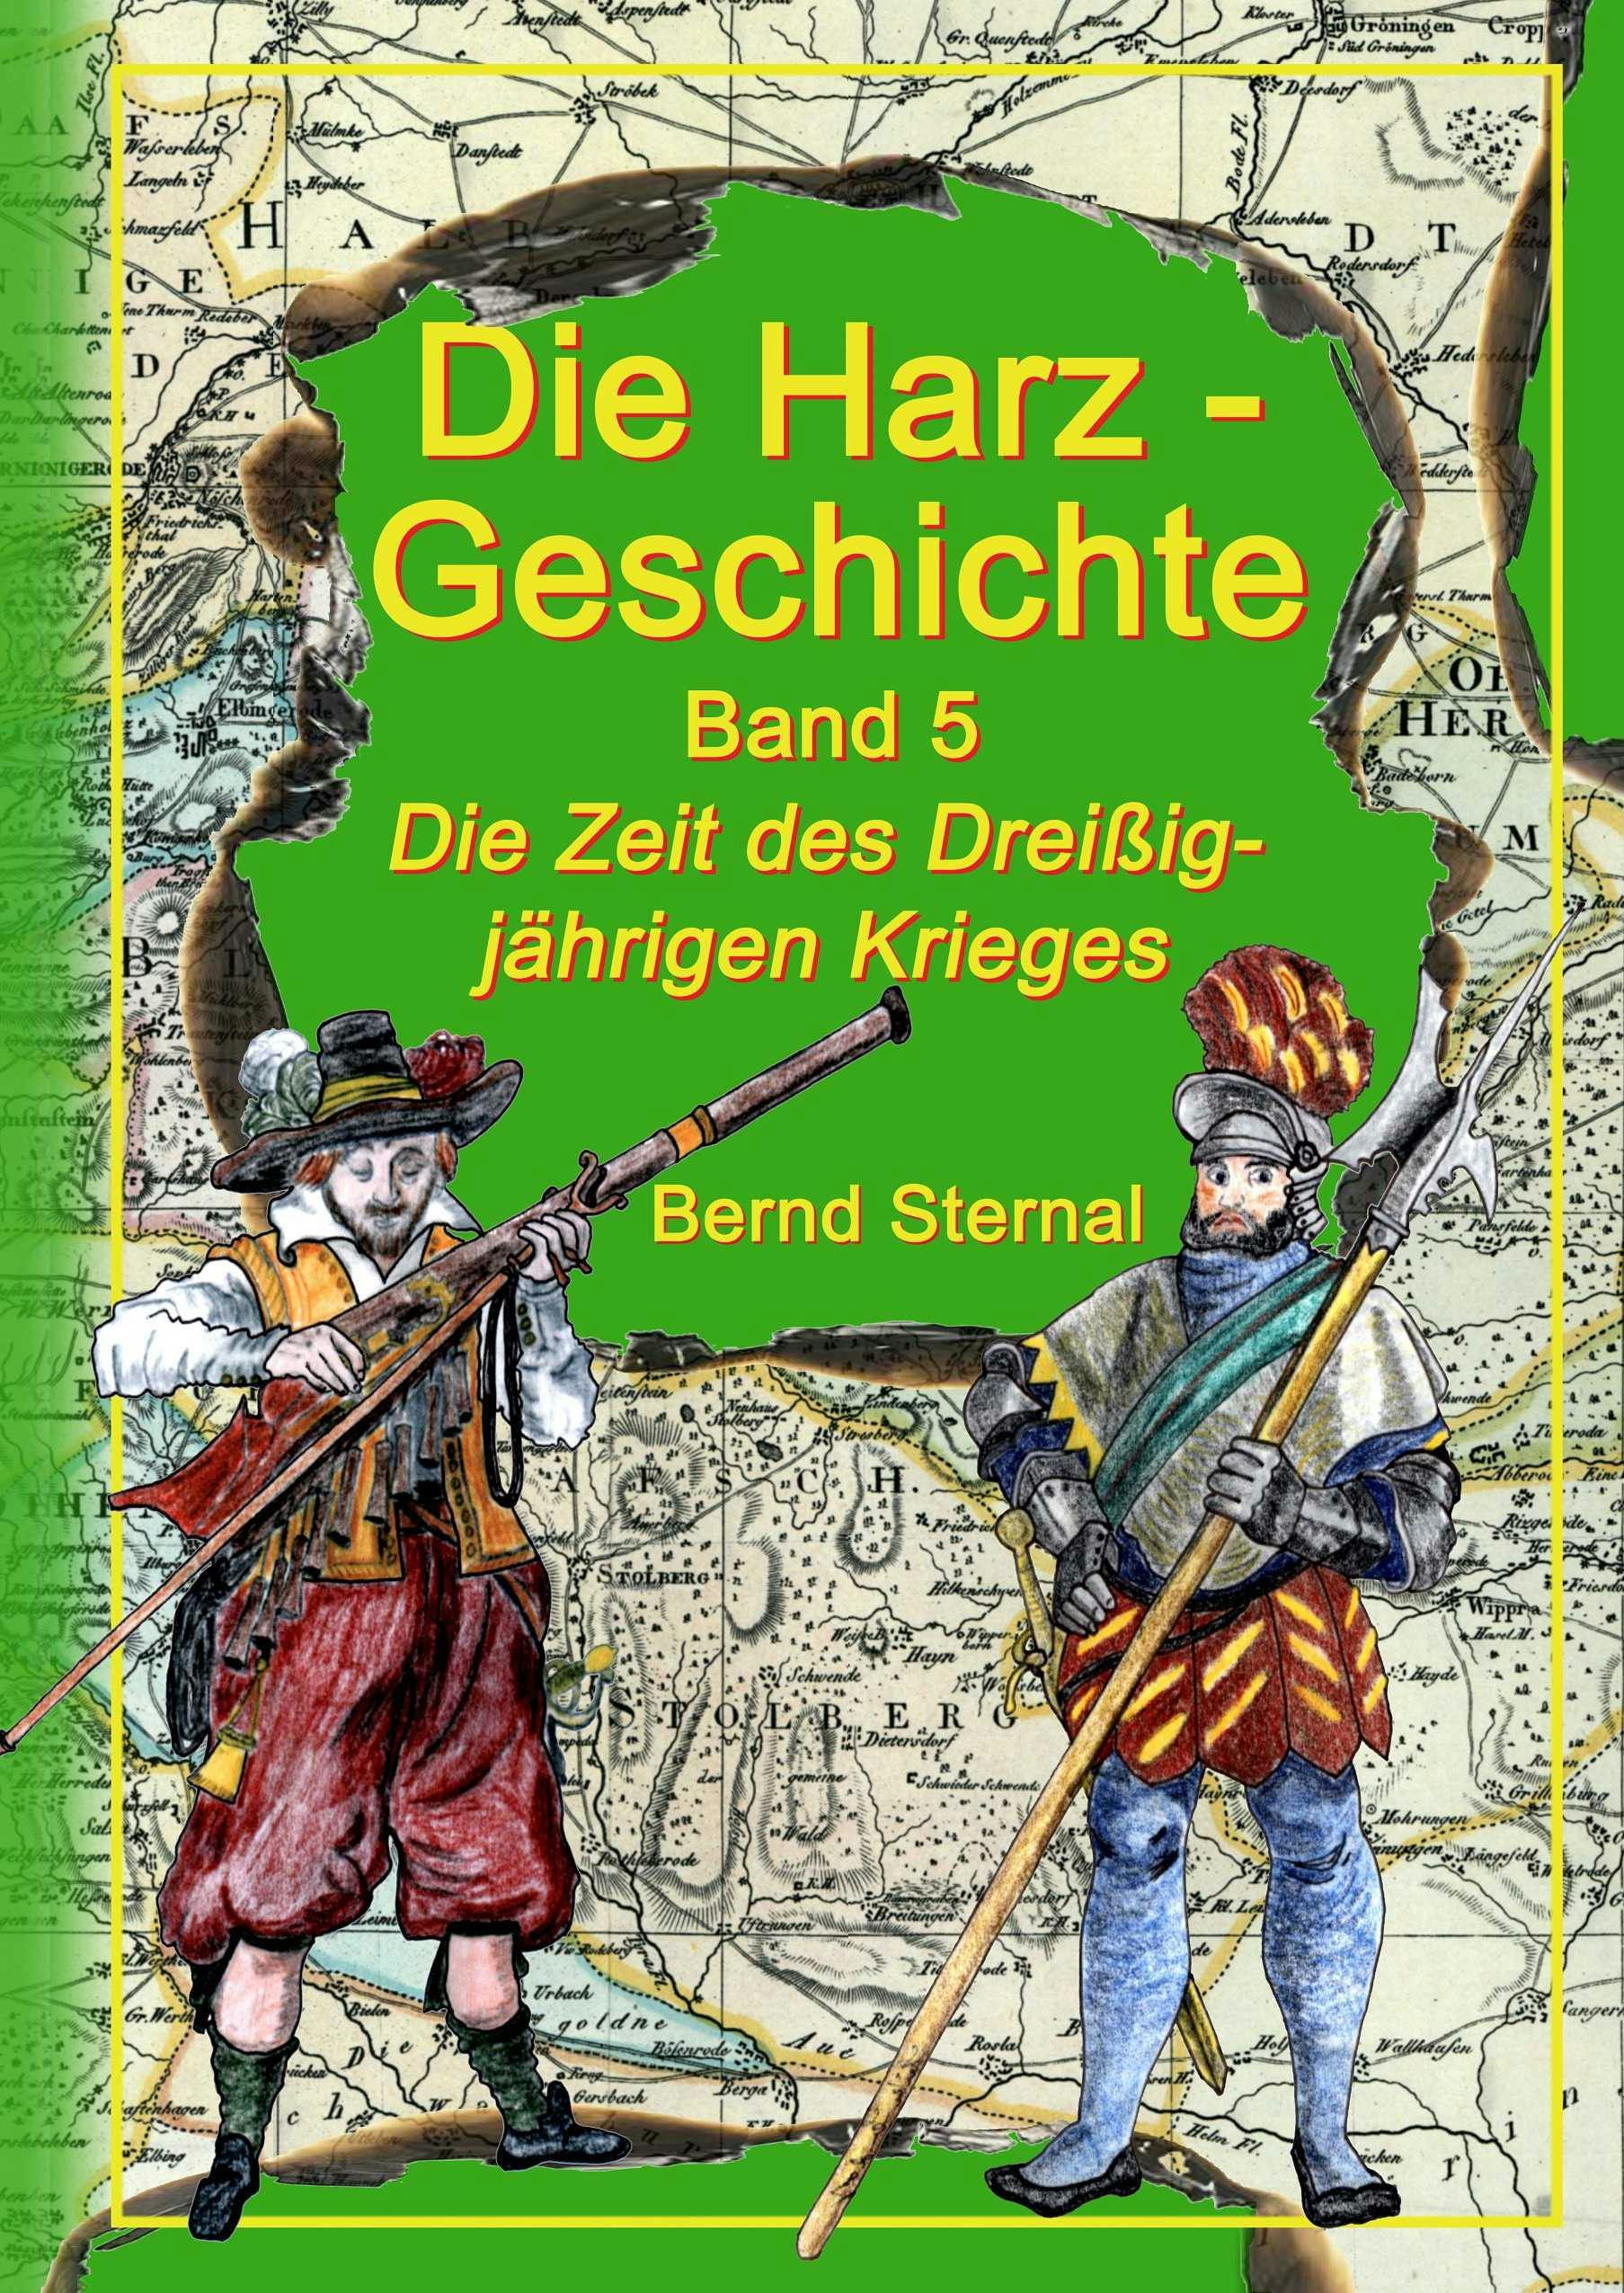 Die Harz - Geschichte 5 - Bernd Sternal